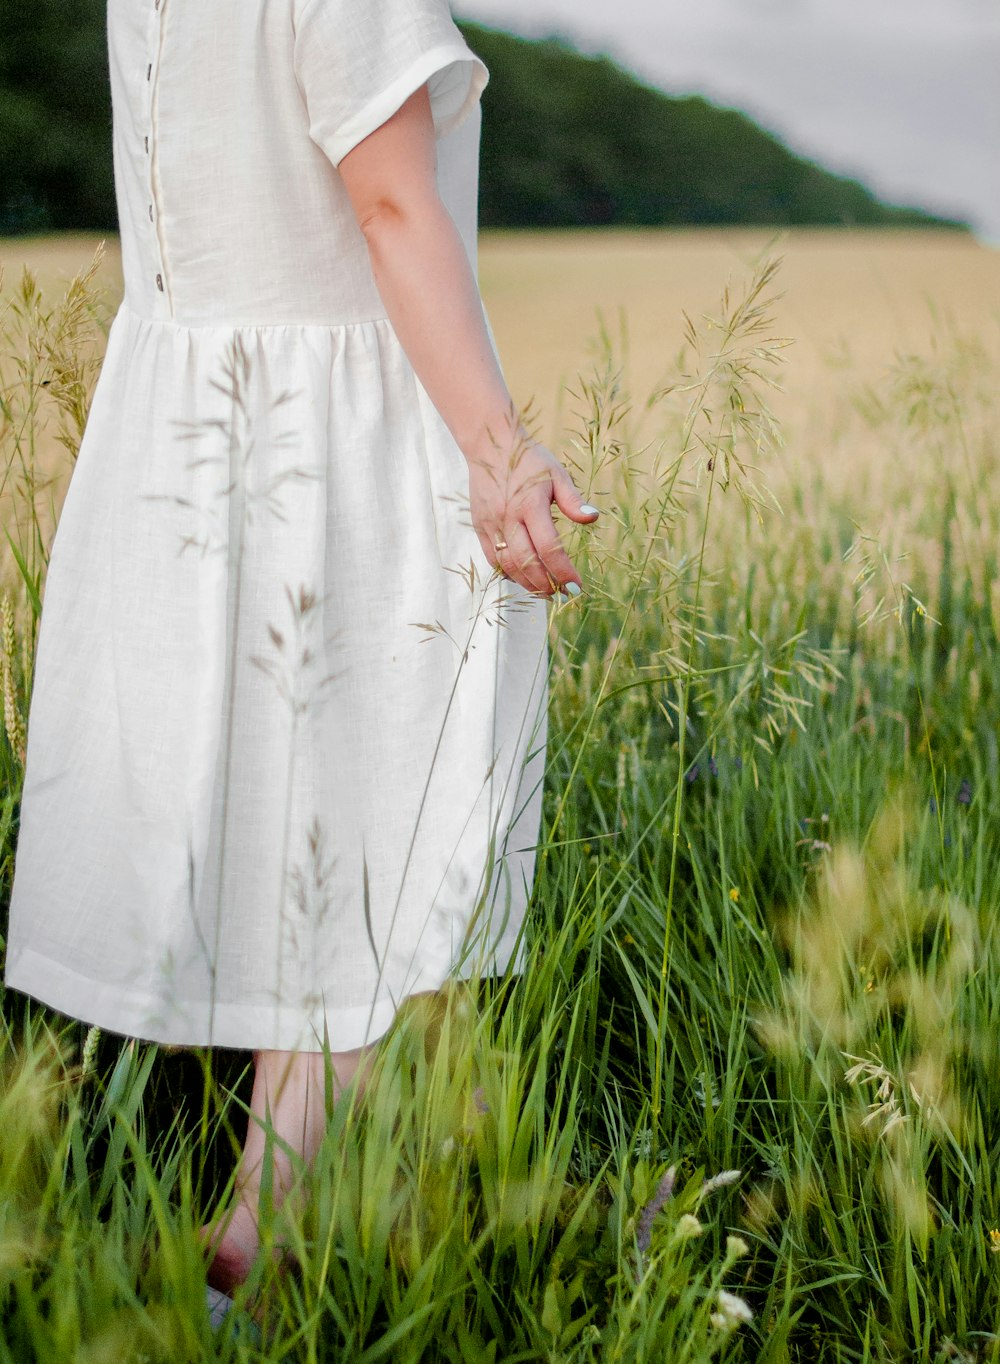 Mujer en vestido blanco de pie en el campo de hierba verde durante el día